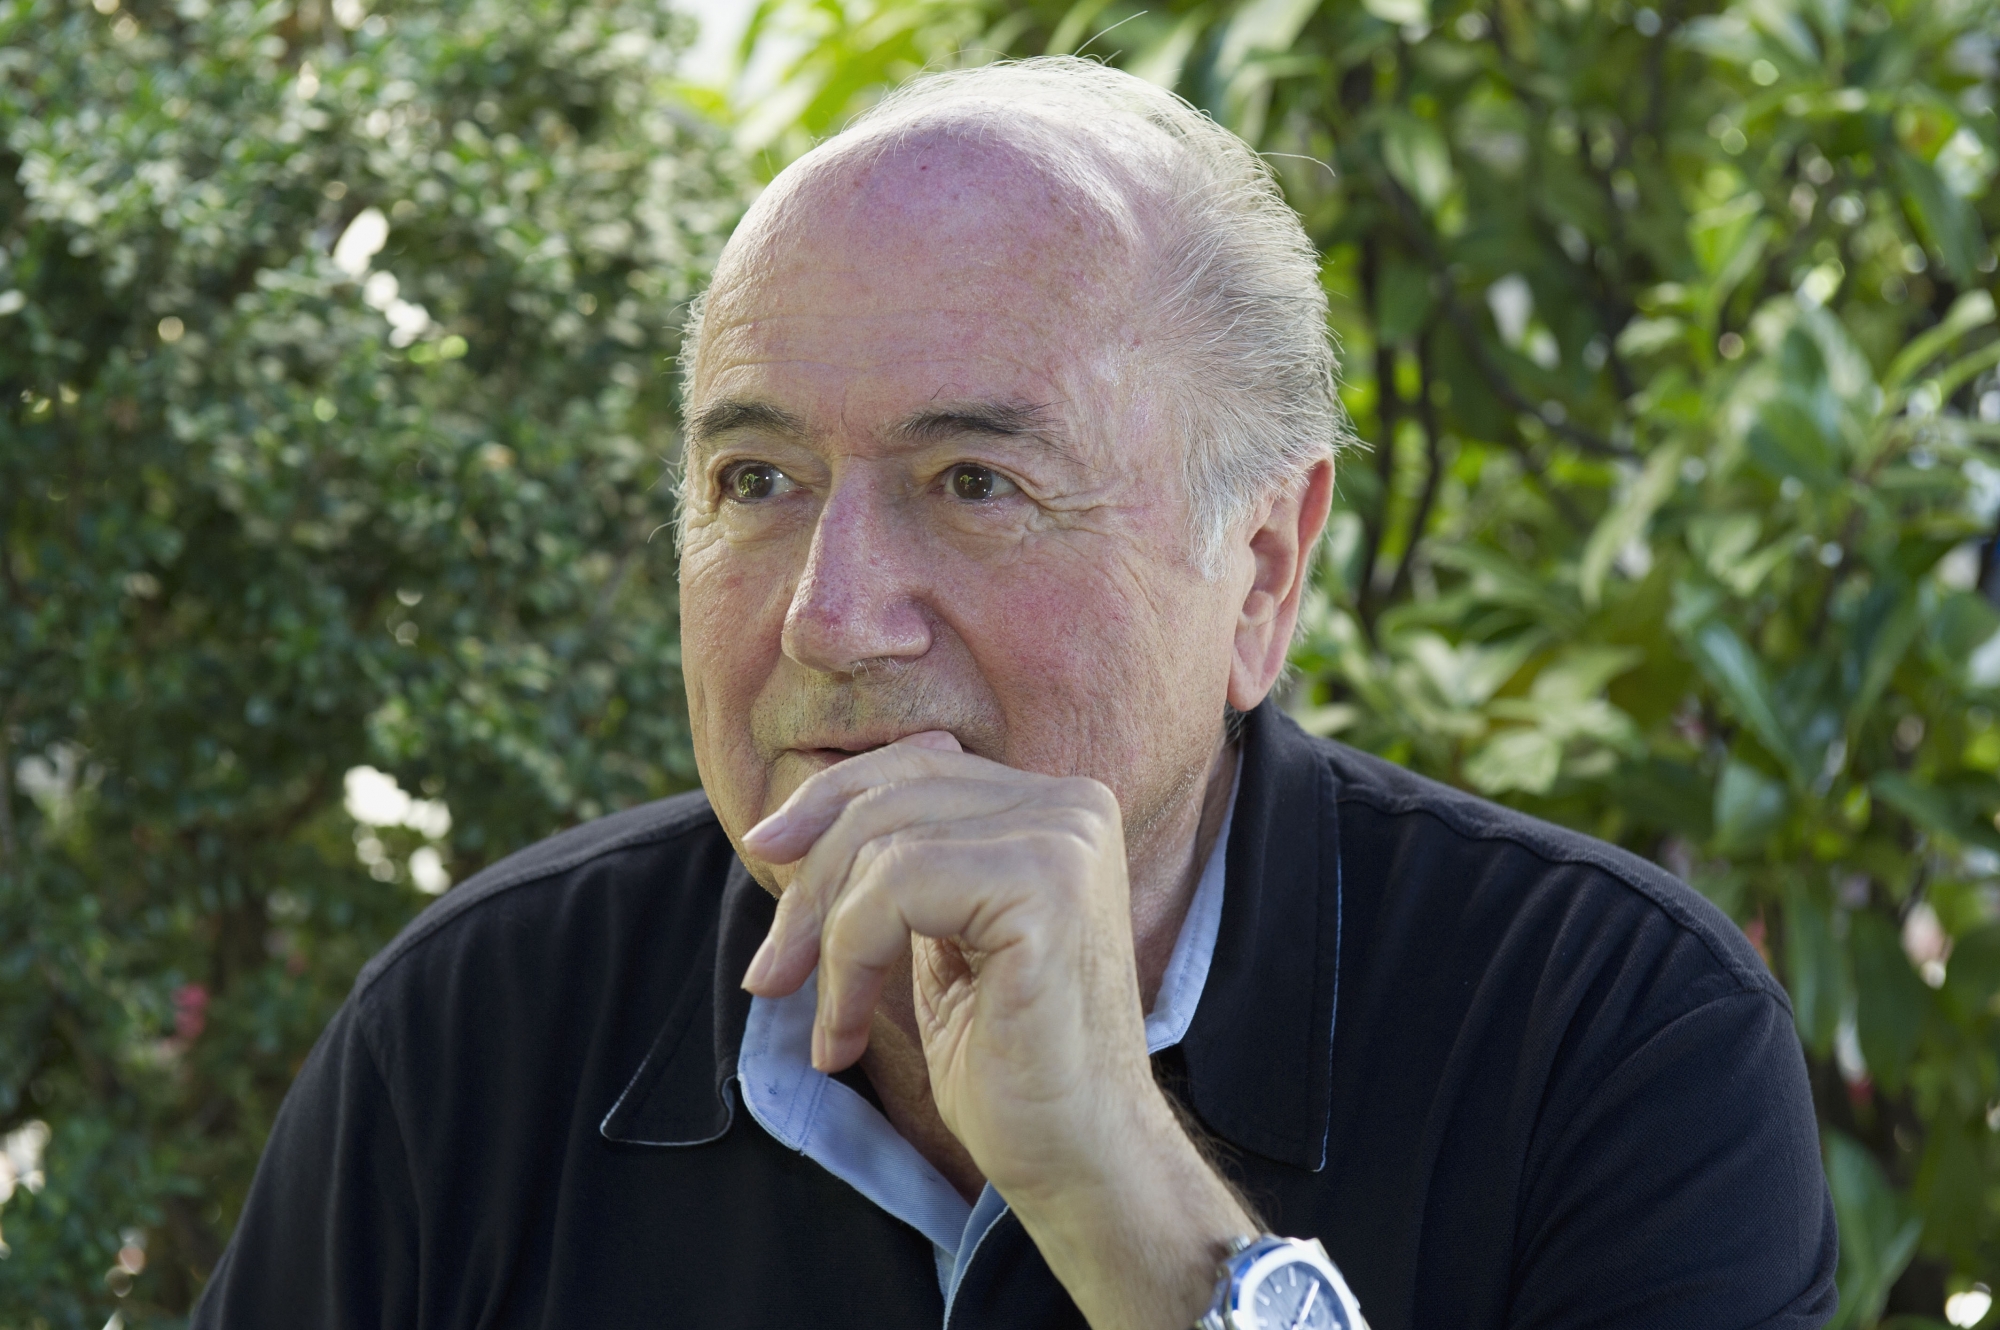 Sierre le, 22 aout 2012: Portrait de Sepp Blatter, président de la FIFA.

Sepp Blatter aimerait terminer son dernier mandat dans la sérénité, loin des affaires en tous genres.



Â©Sacha Bittel/Le Nouvelliste